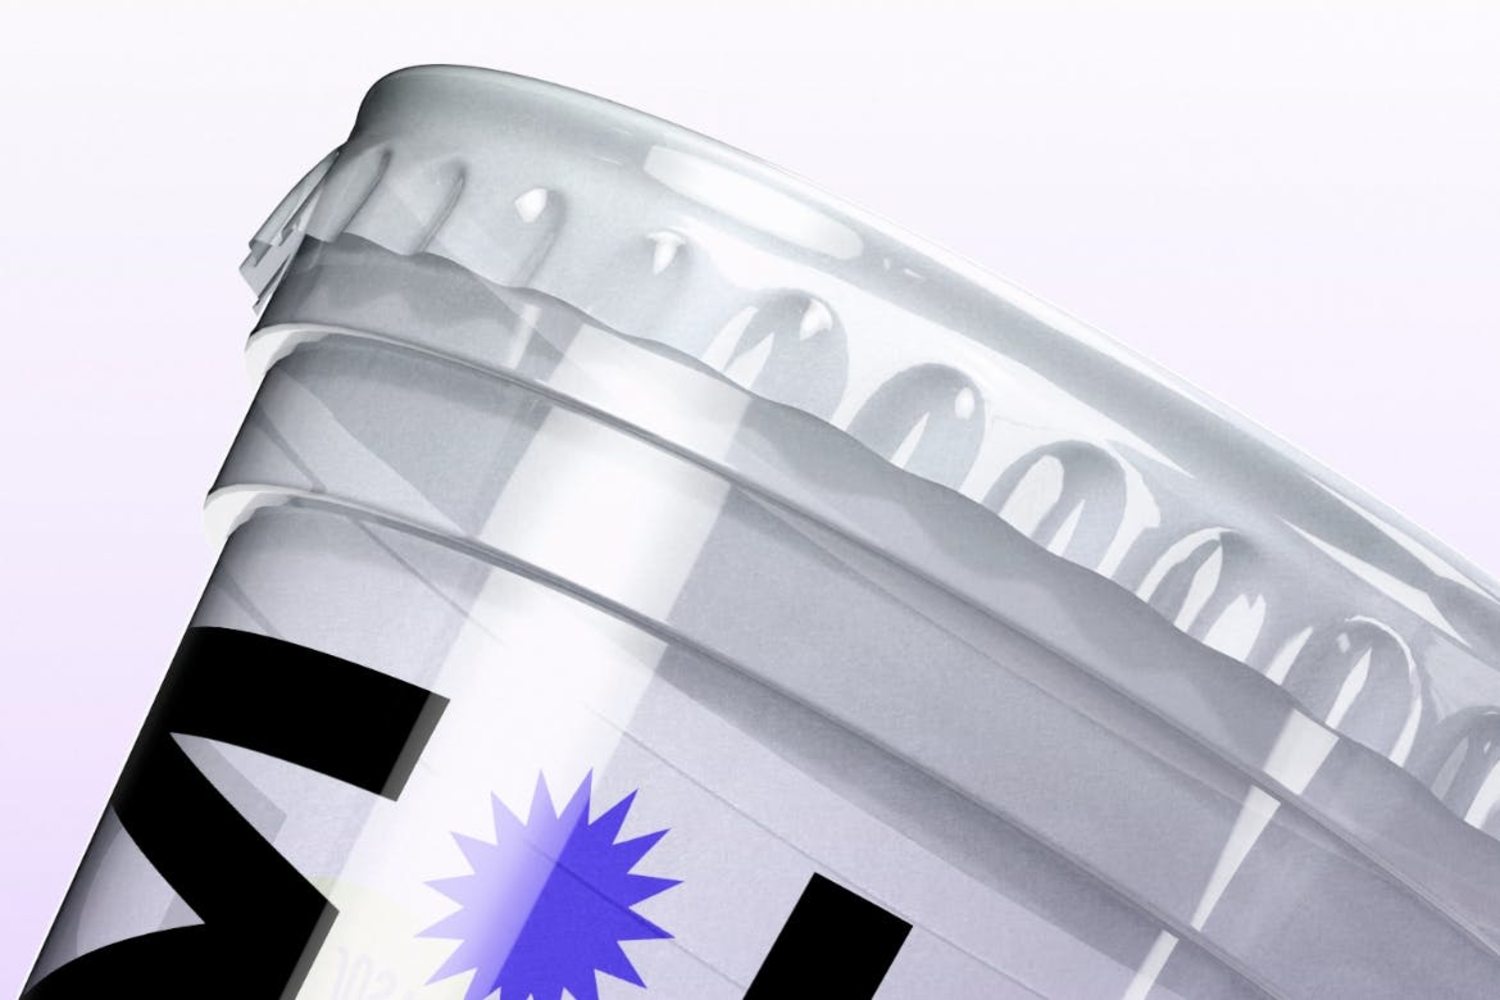 4232 极简质感透明塑料咖啡杯饮料杯外卖杯品牌设计展示PSD包装样机Transparent Plastic Cup Mockup@GOOODME.COM